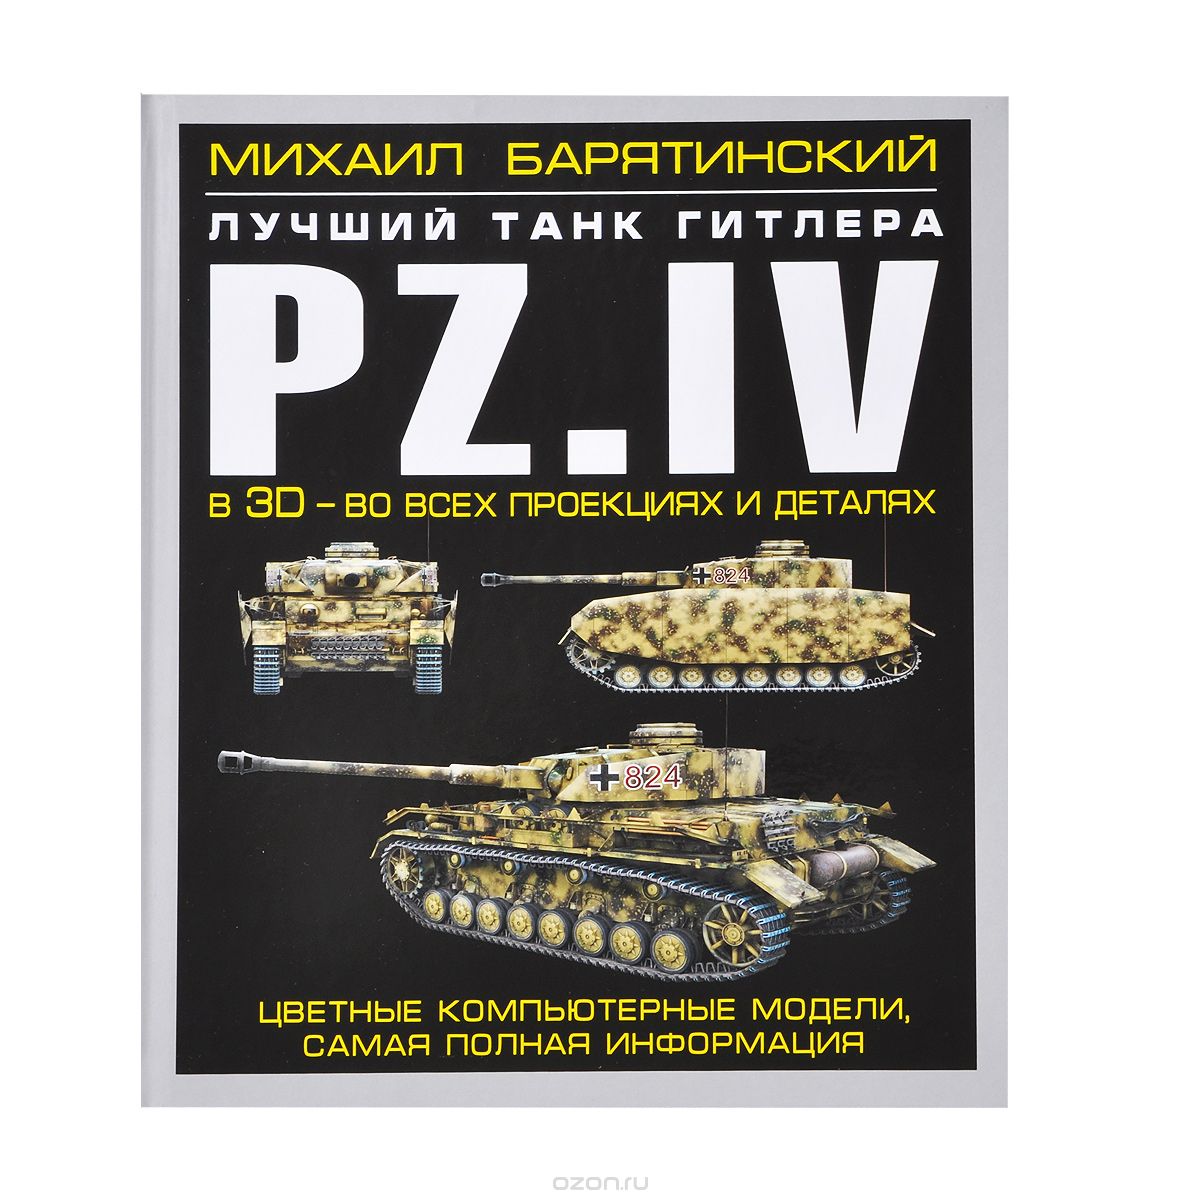 Pz.IV. Лучший танк Гитлера в 3D - во всех проекциях и деталях, Михаил Барятинский